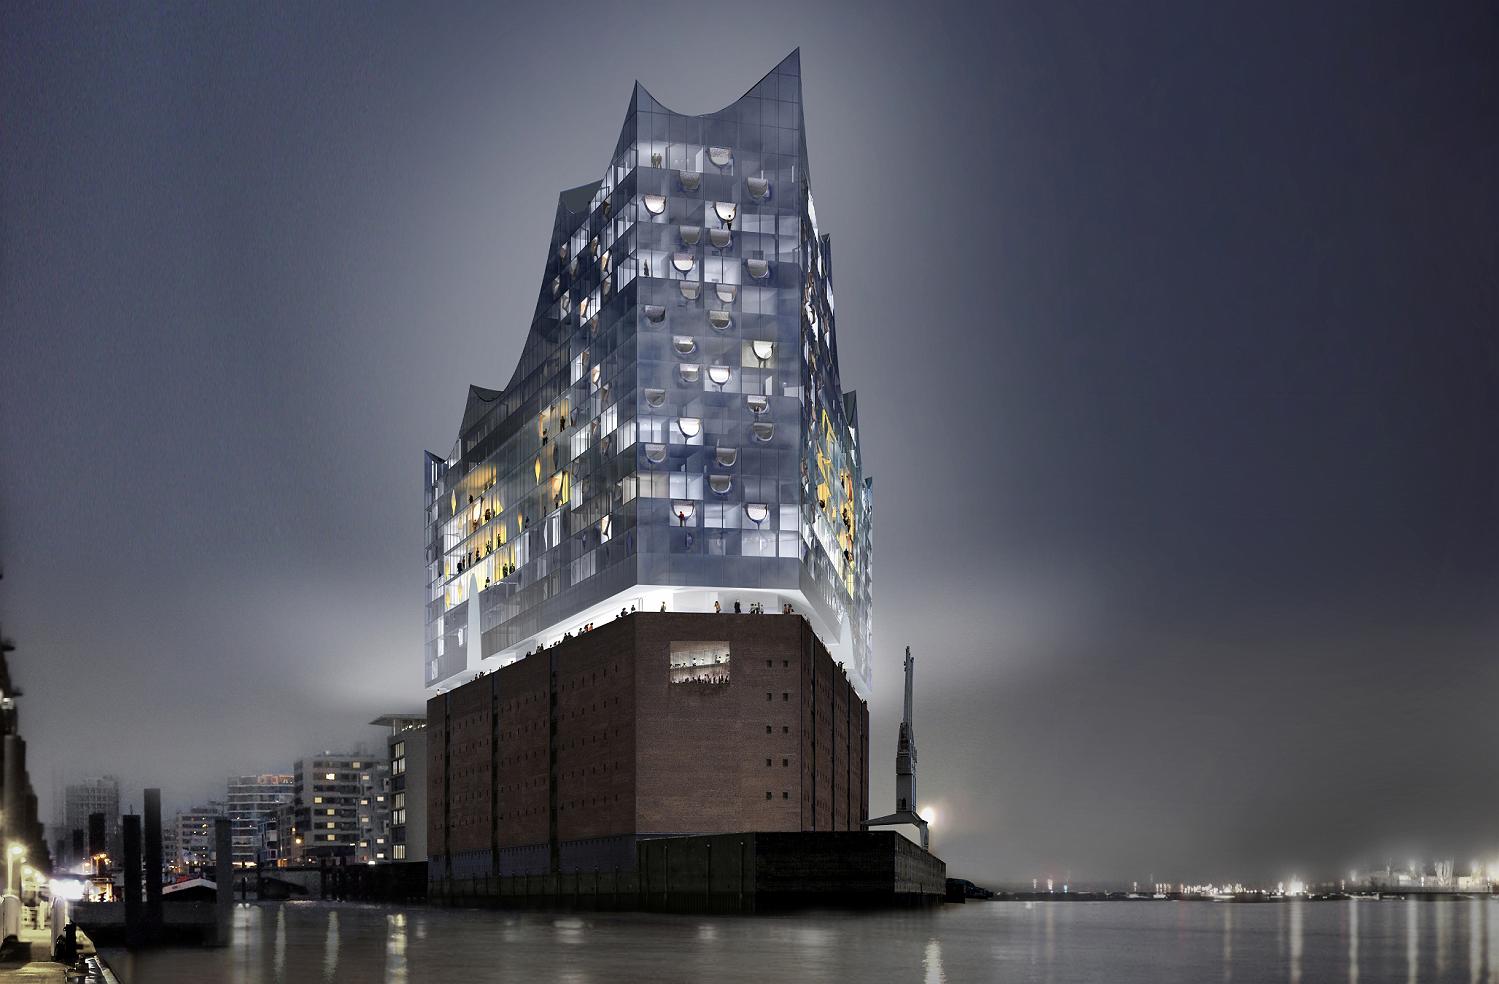 Wahrzeichen mit Tophotel: In der neuen Elbphilharmonie in Hamburg entsteht ein Westin Hotel mit 244 Zimmern – Eröffnung soll Anfang 2017 sein